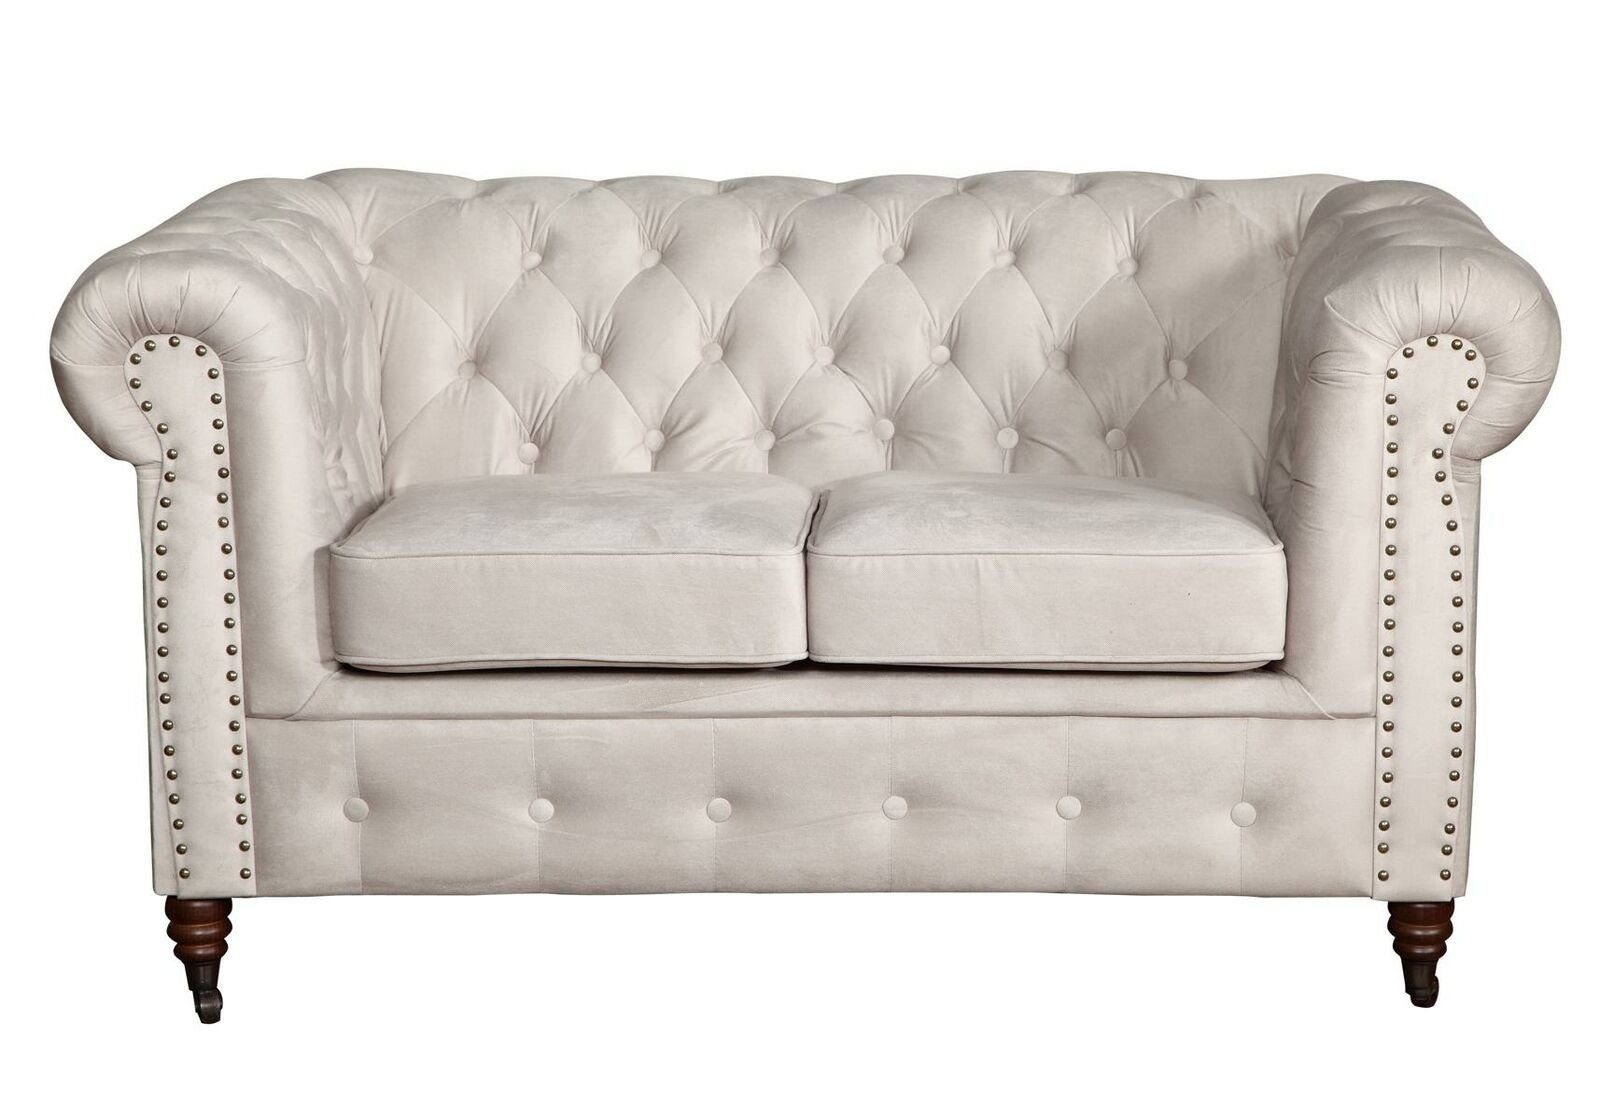 Aktuelle Informationen finden Sie unter JVmoebel Sofa Weißes Sofa 2 Europe Sitzer Made Couch Textil Stoff in Chesterfield Sofa Möbel